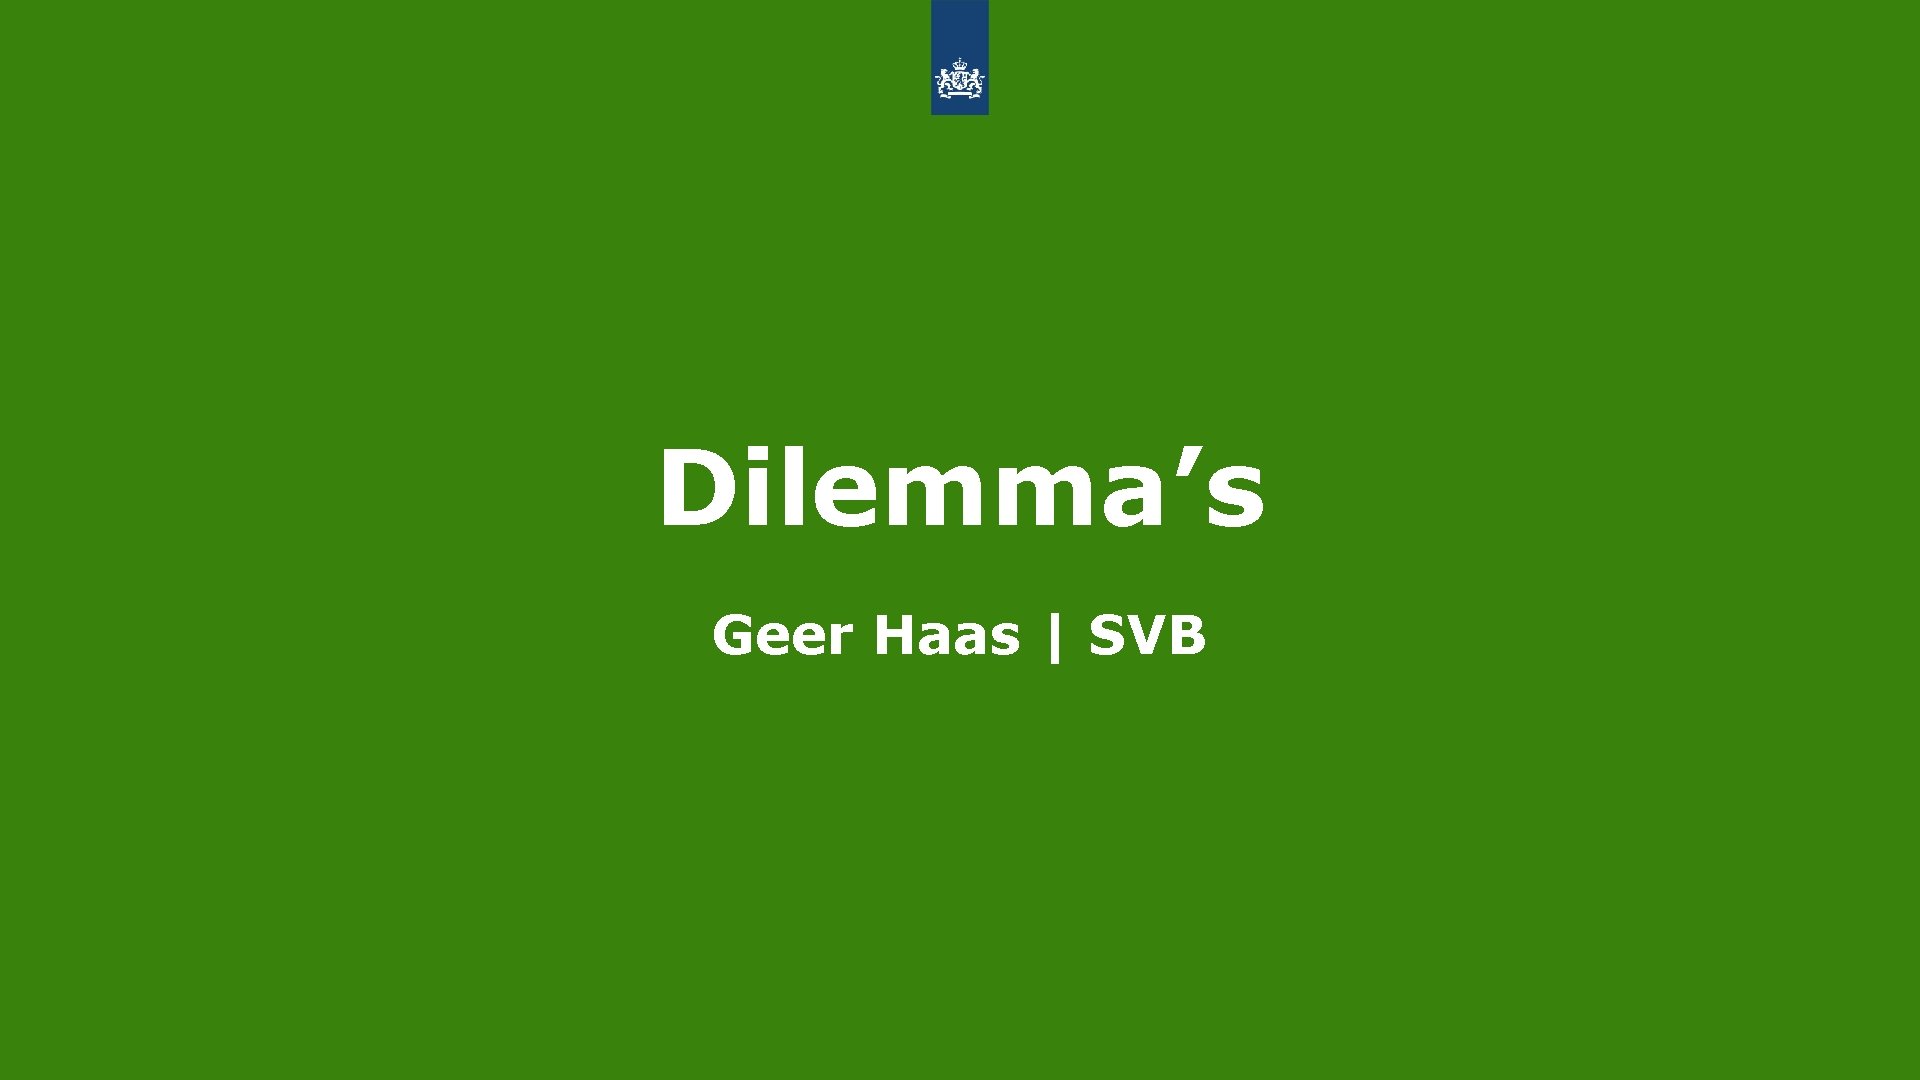 Dilemma’s Geer Haas | SVB 